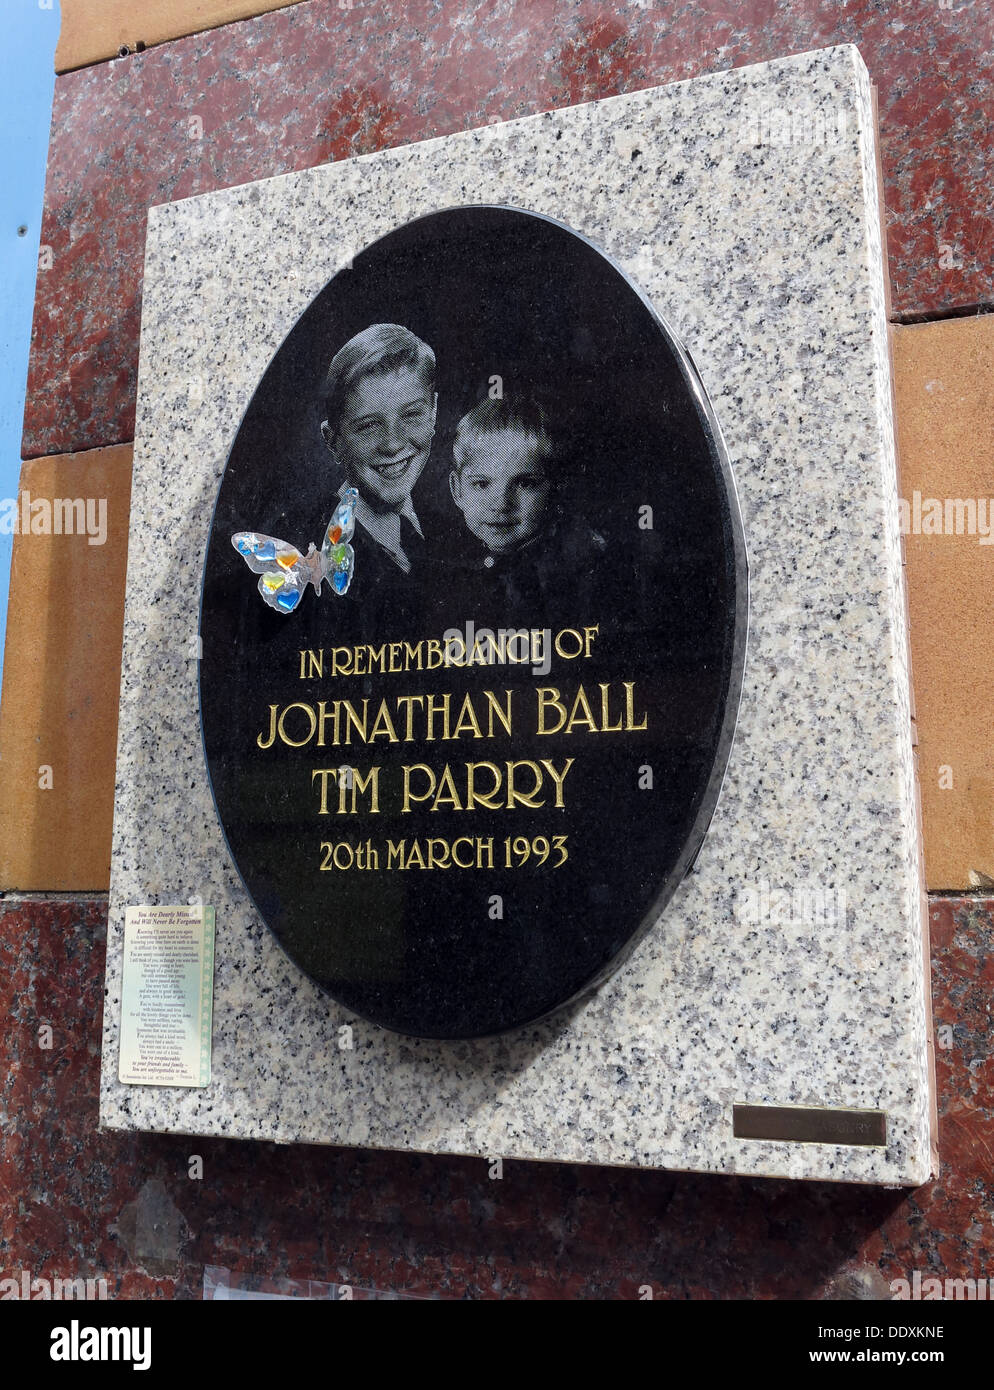 Denkmal für Jonathon Ball und Tim Parry, Bombe Opfer der IRA in Warrington  20.03.1993, Cheshire, UK (Ersatz Memorial Stockfotografie - Alamy